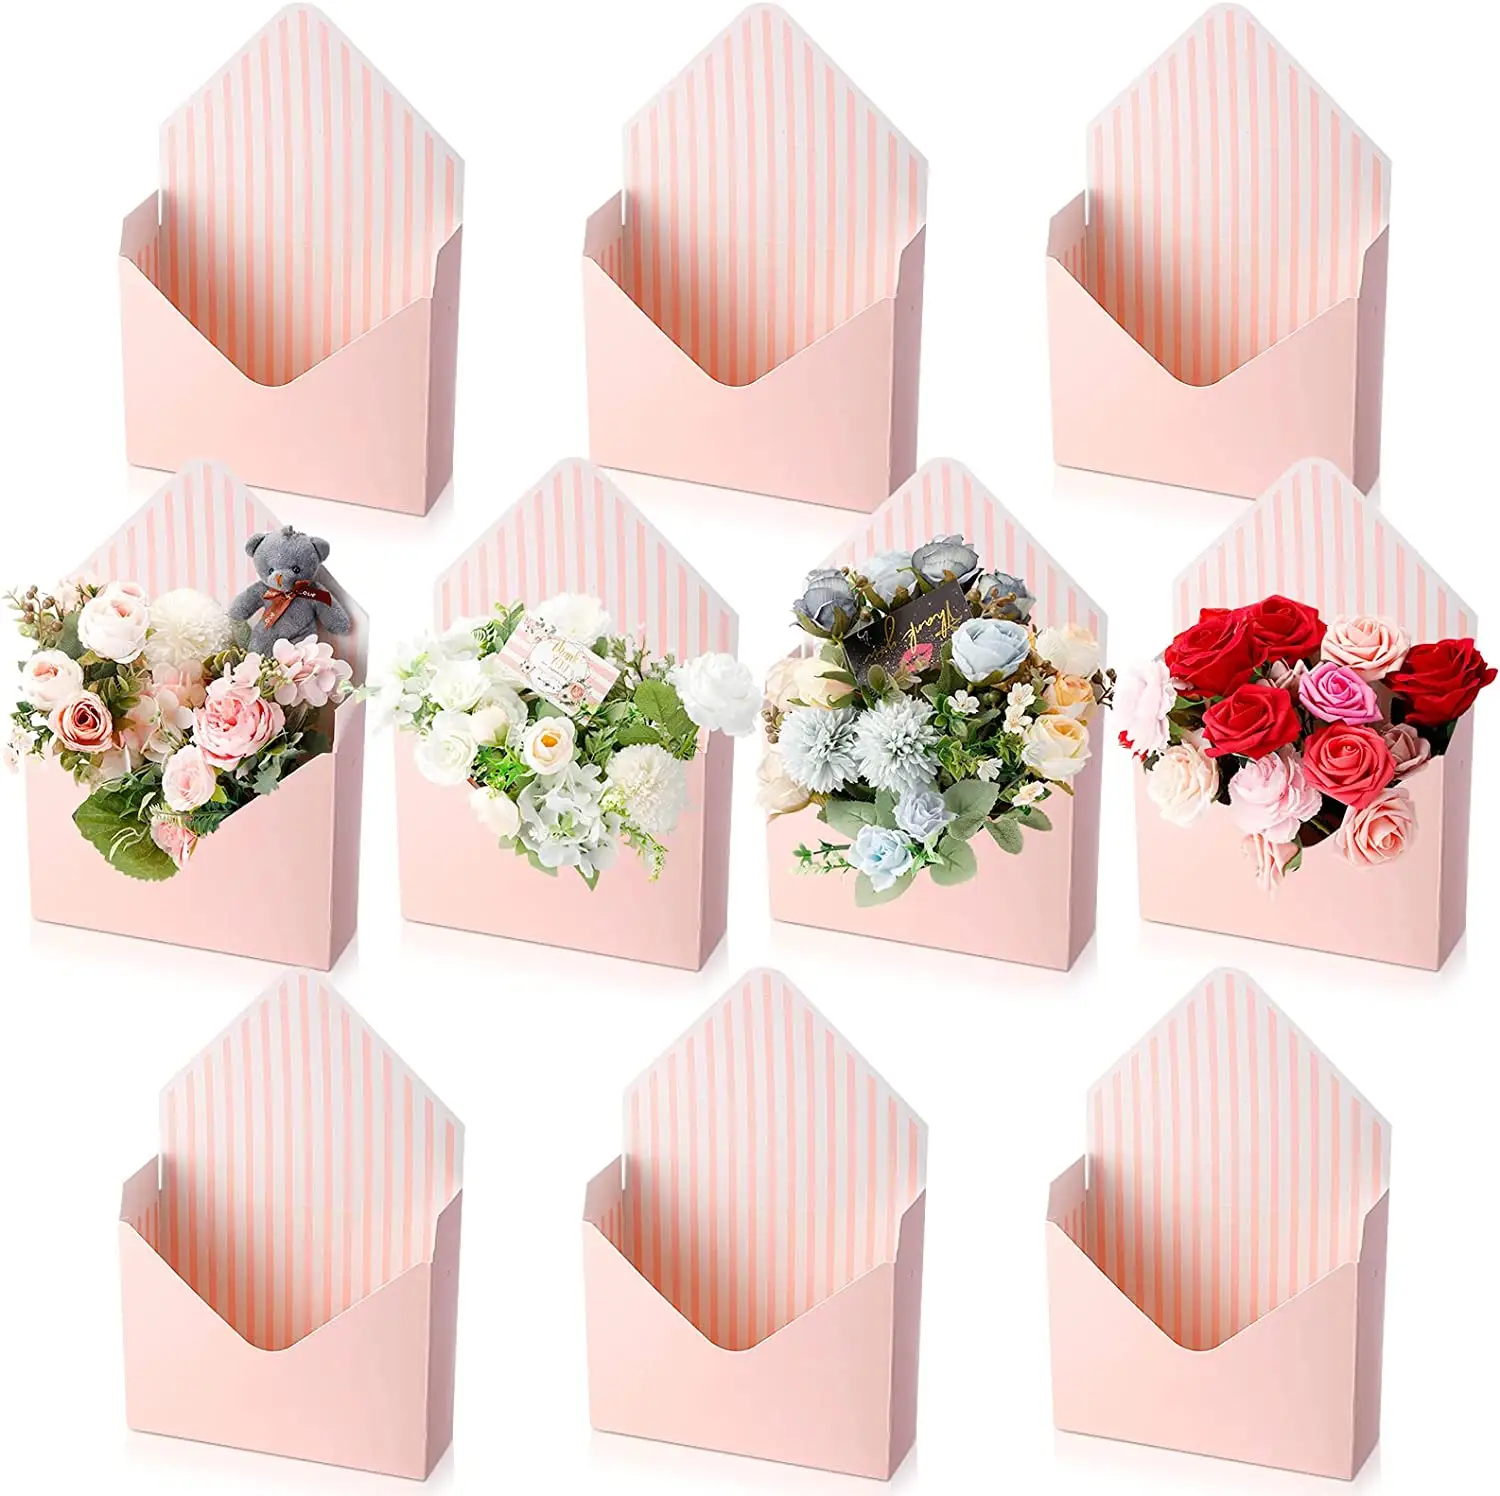 10 adet çiçekçi buket zarf kutusu toplu pembe buket ambalaj hediye karton kutu ambalaj çiçek kutusu düzenleme